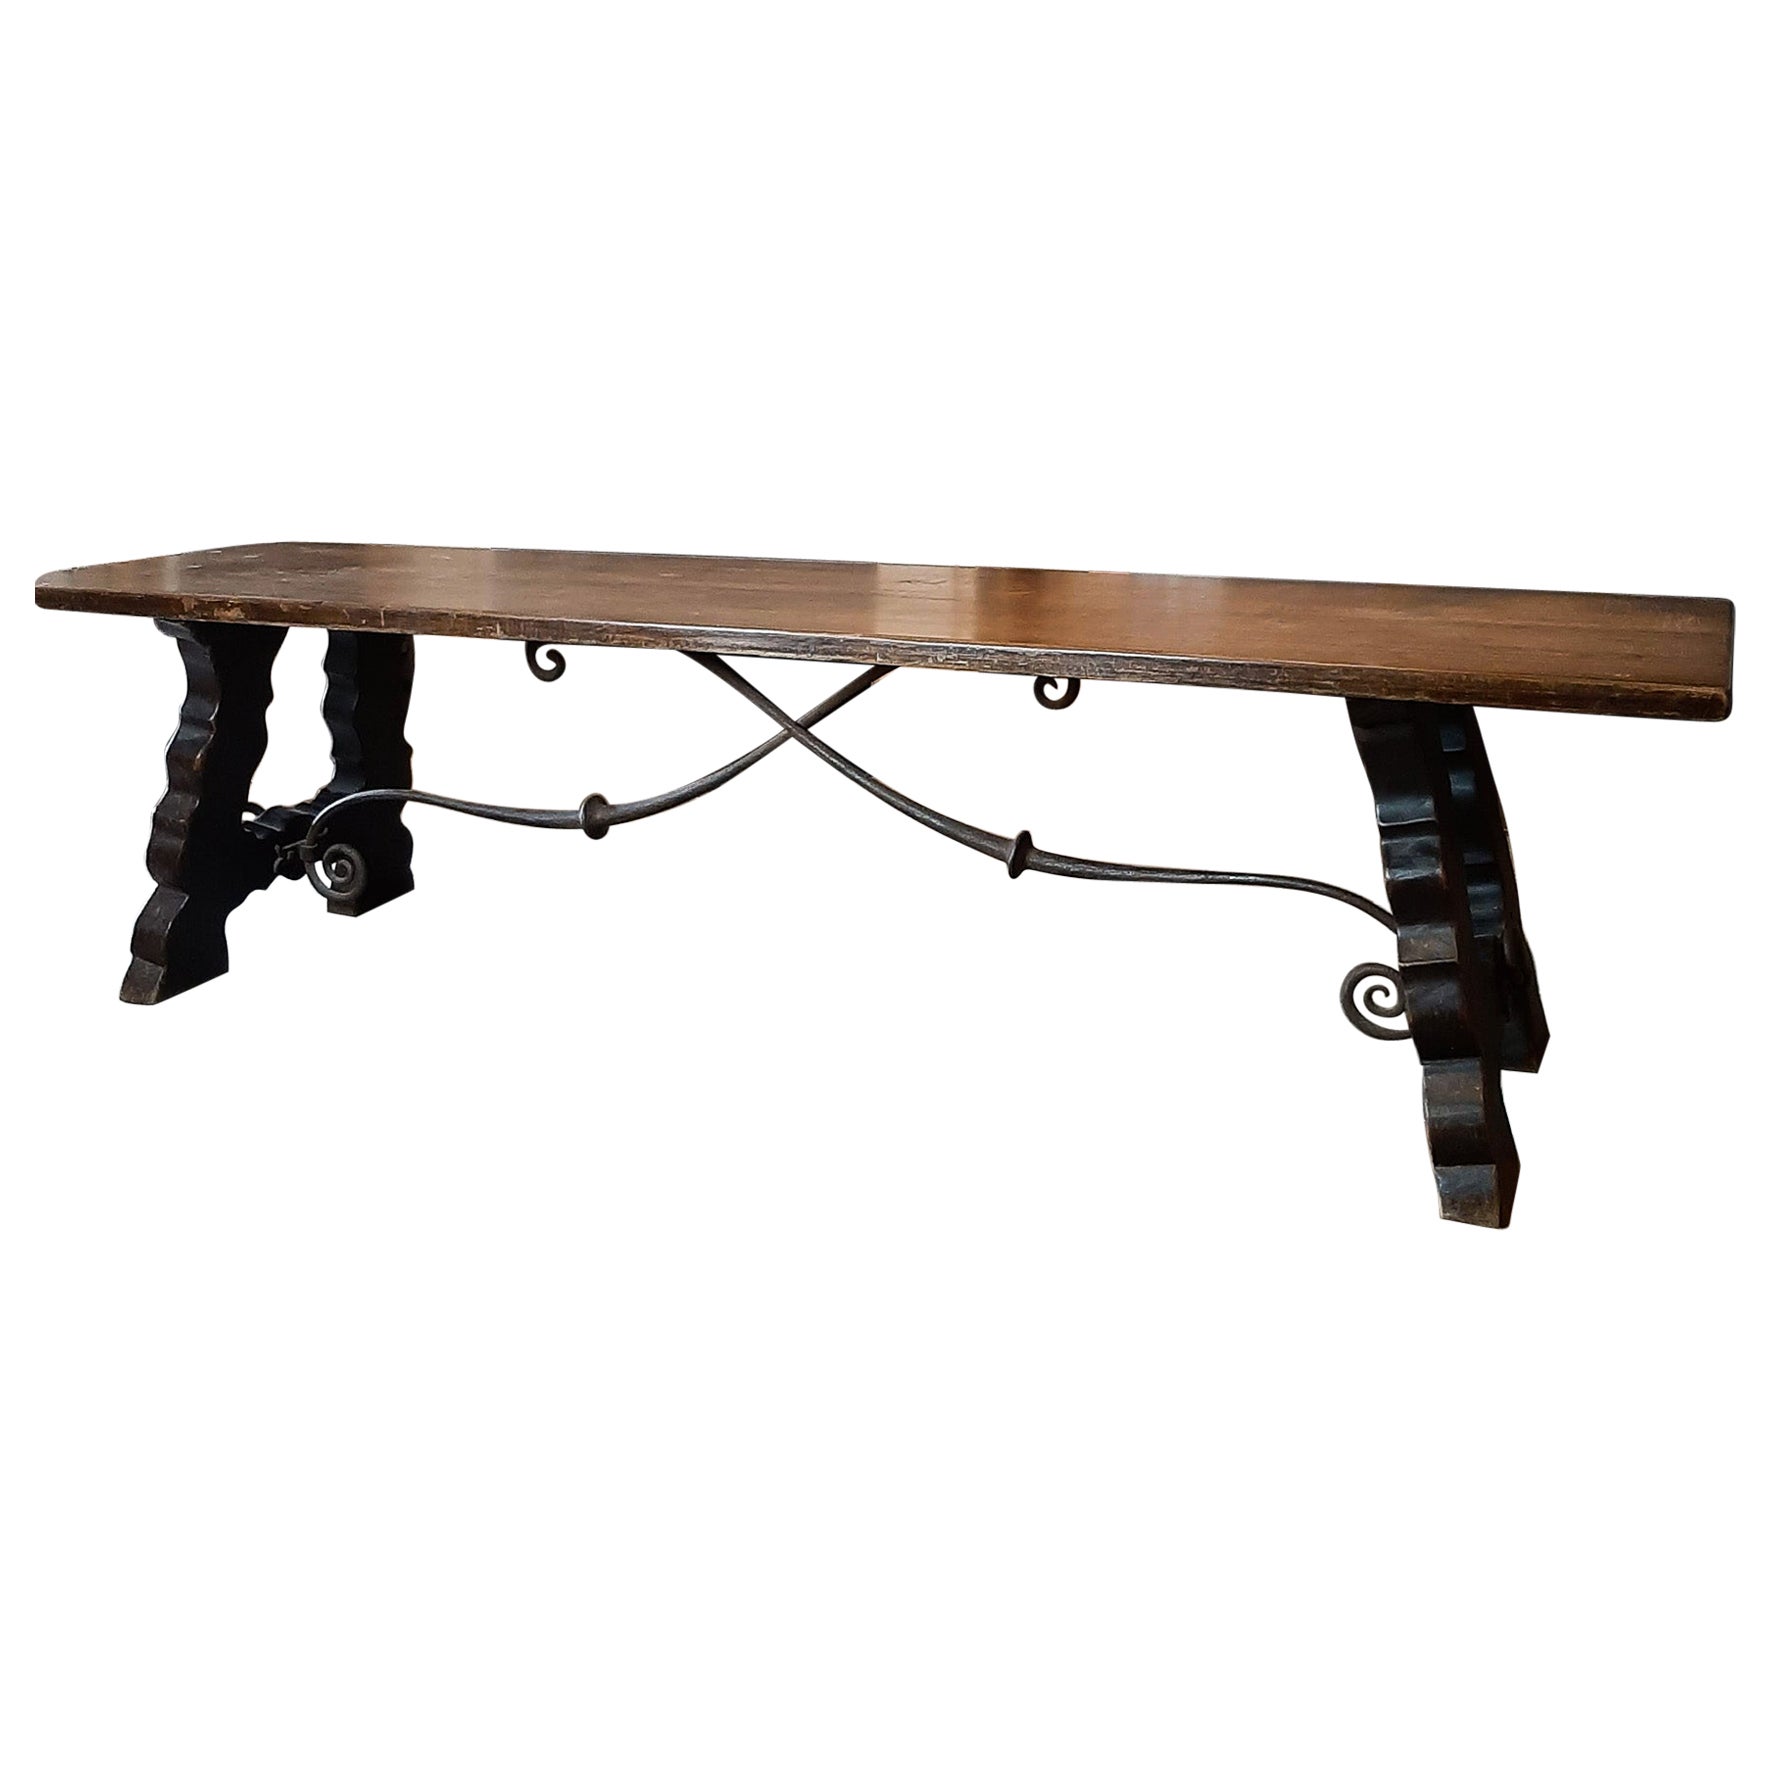 Table de salle à manger espagnole ancienne en bois avec support en fer forgé à la main